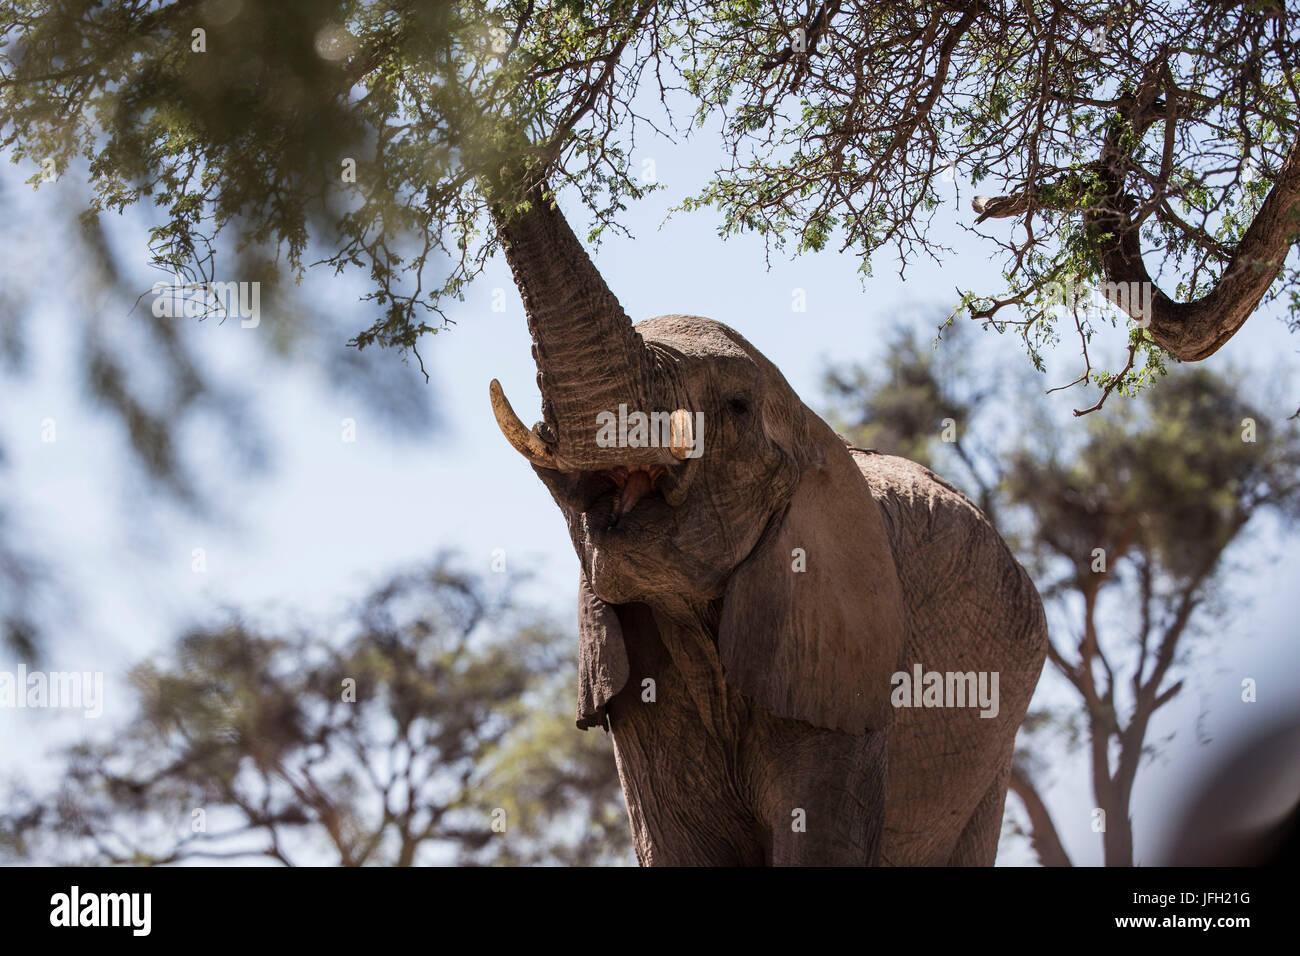 Namibia, region of Kunene, Hoanib, African elephant Loxodonta africana, tree, forks, leaves, eat, Stock Photo